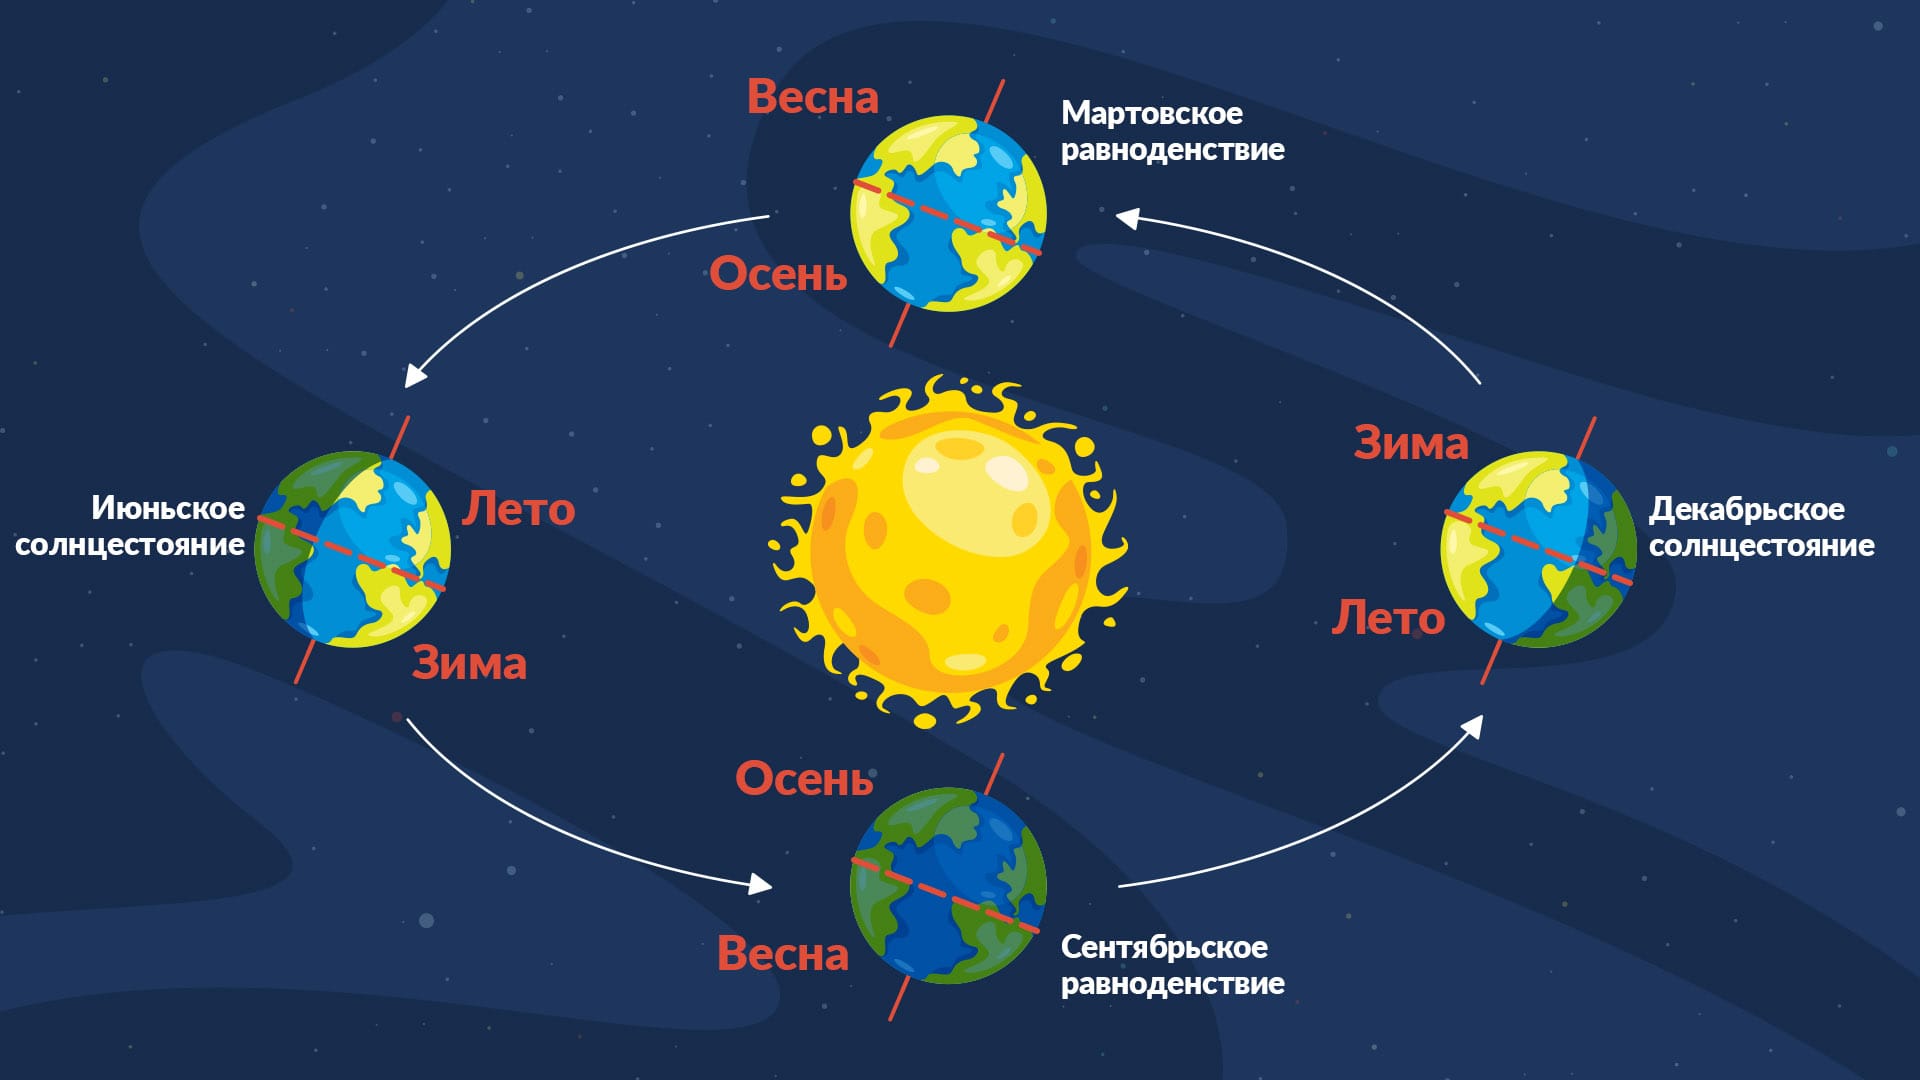 Астрономический календарь 2023 | Астрономические события 2023 |  Астрономические явления 2023 | Космические события 2023 | Star Walk